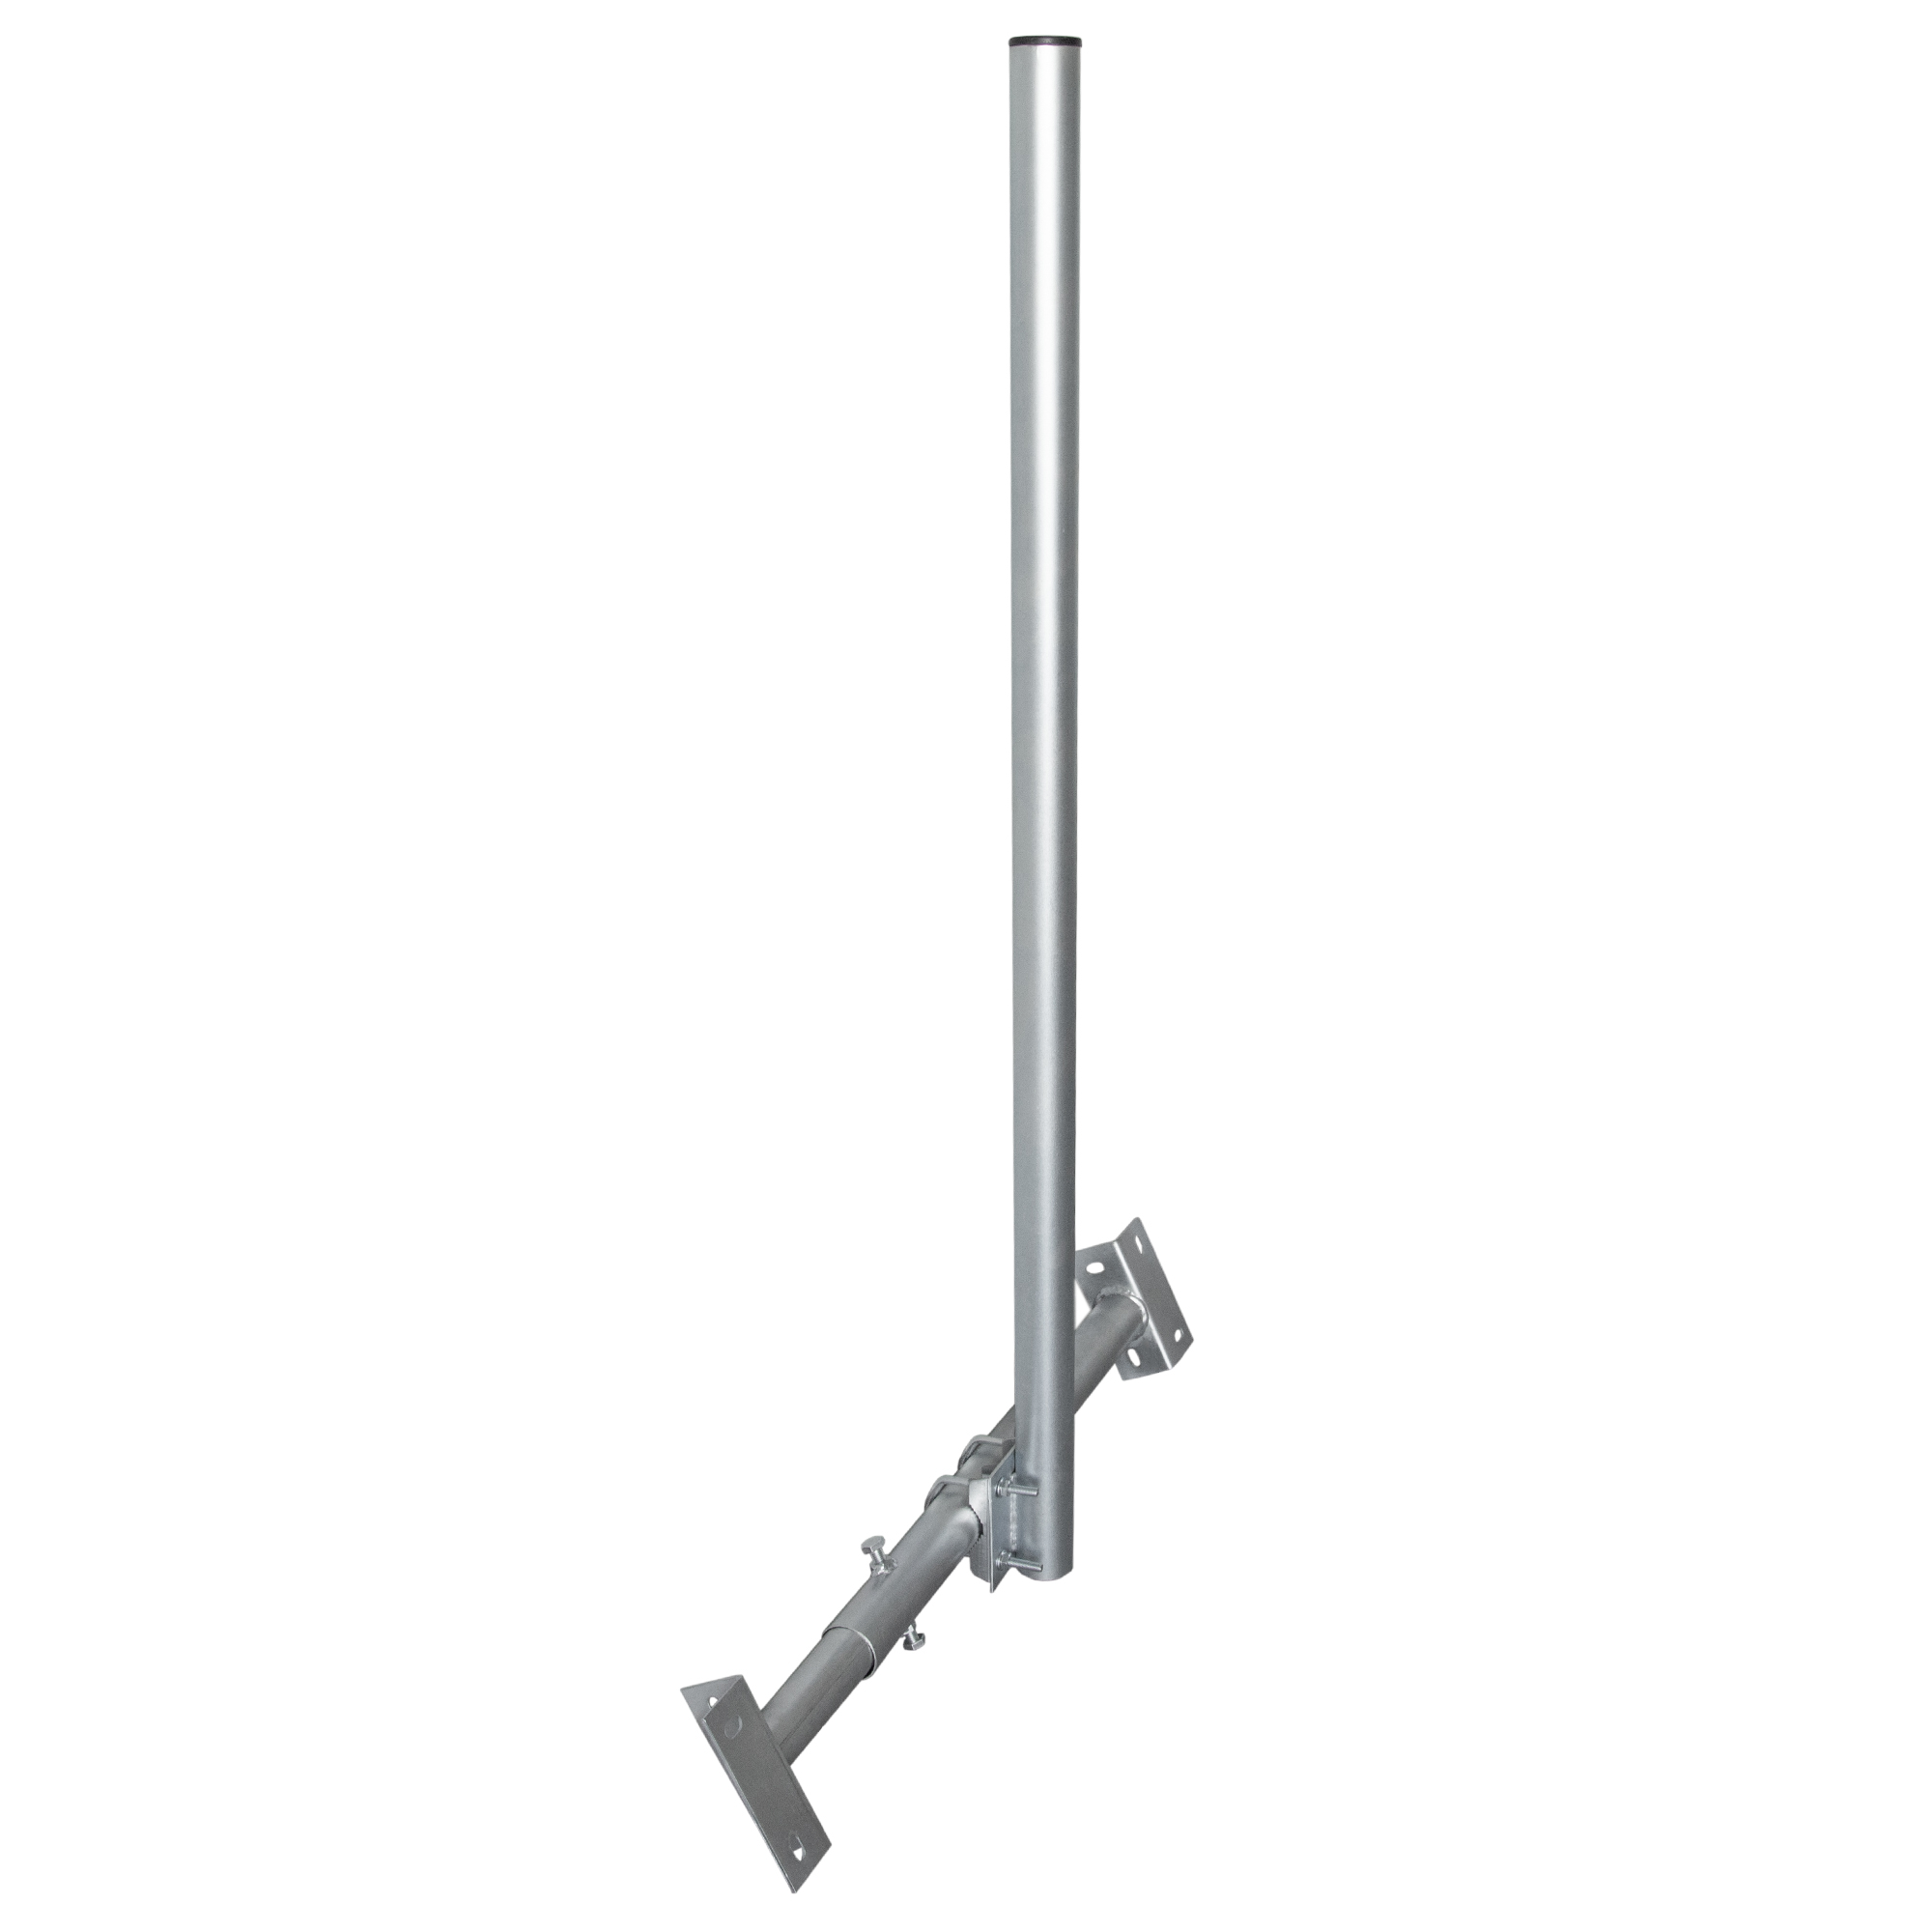 Mast feuerverzinkt BASIC X120-48 48mm 120cm SAT PREMIUMX Silber Dachsparrenhalterung, Dachsparrenhalter